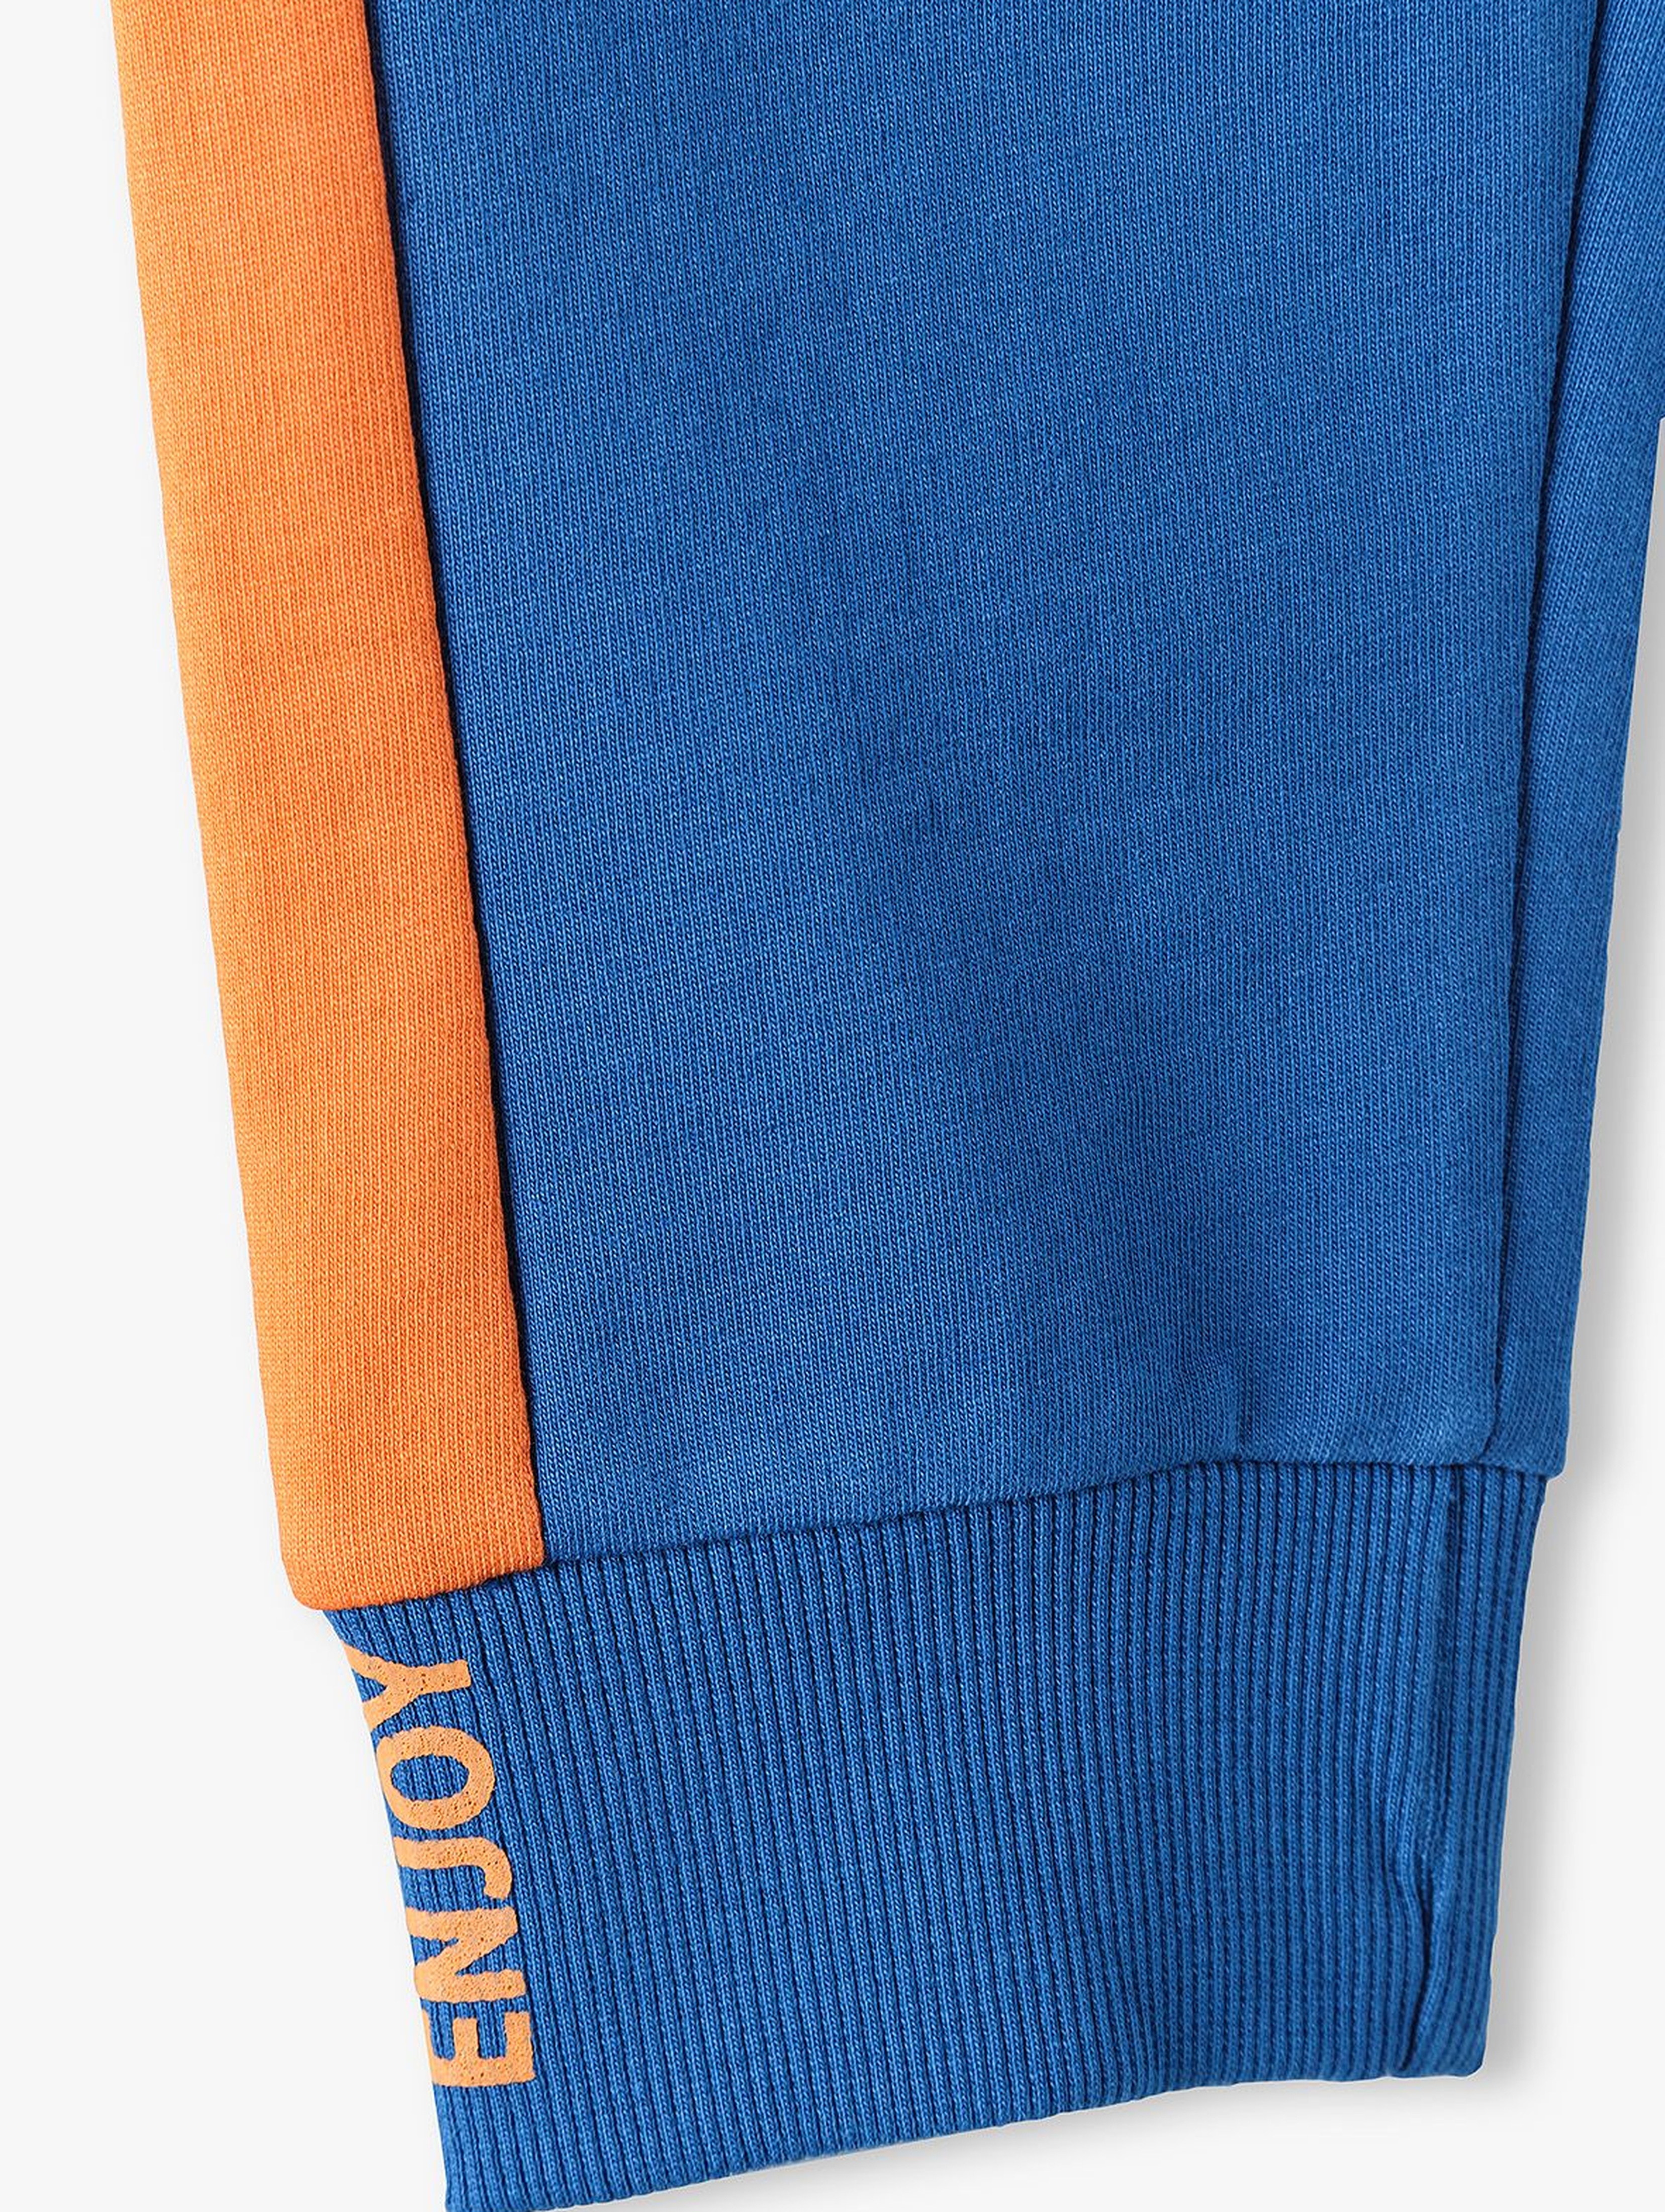 Bawełniane spodnie dresowe chłopięce niebieskie z pomarańczowymi wstawkami